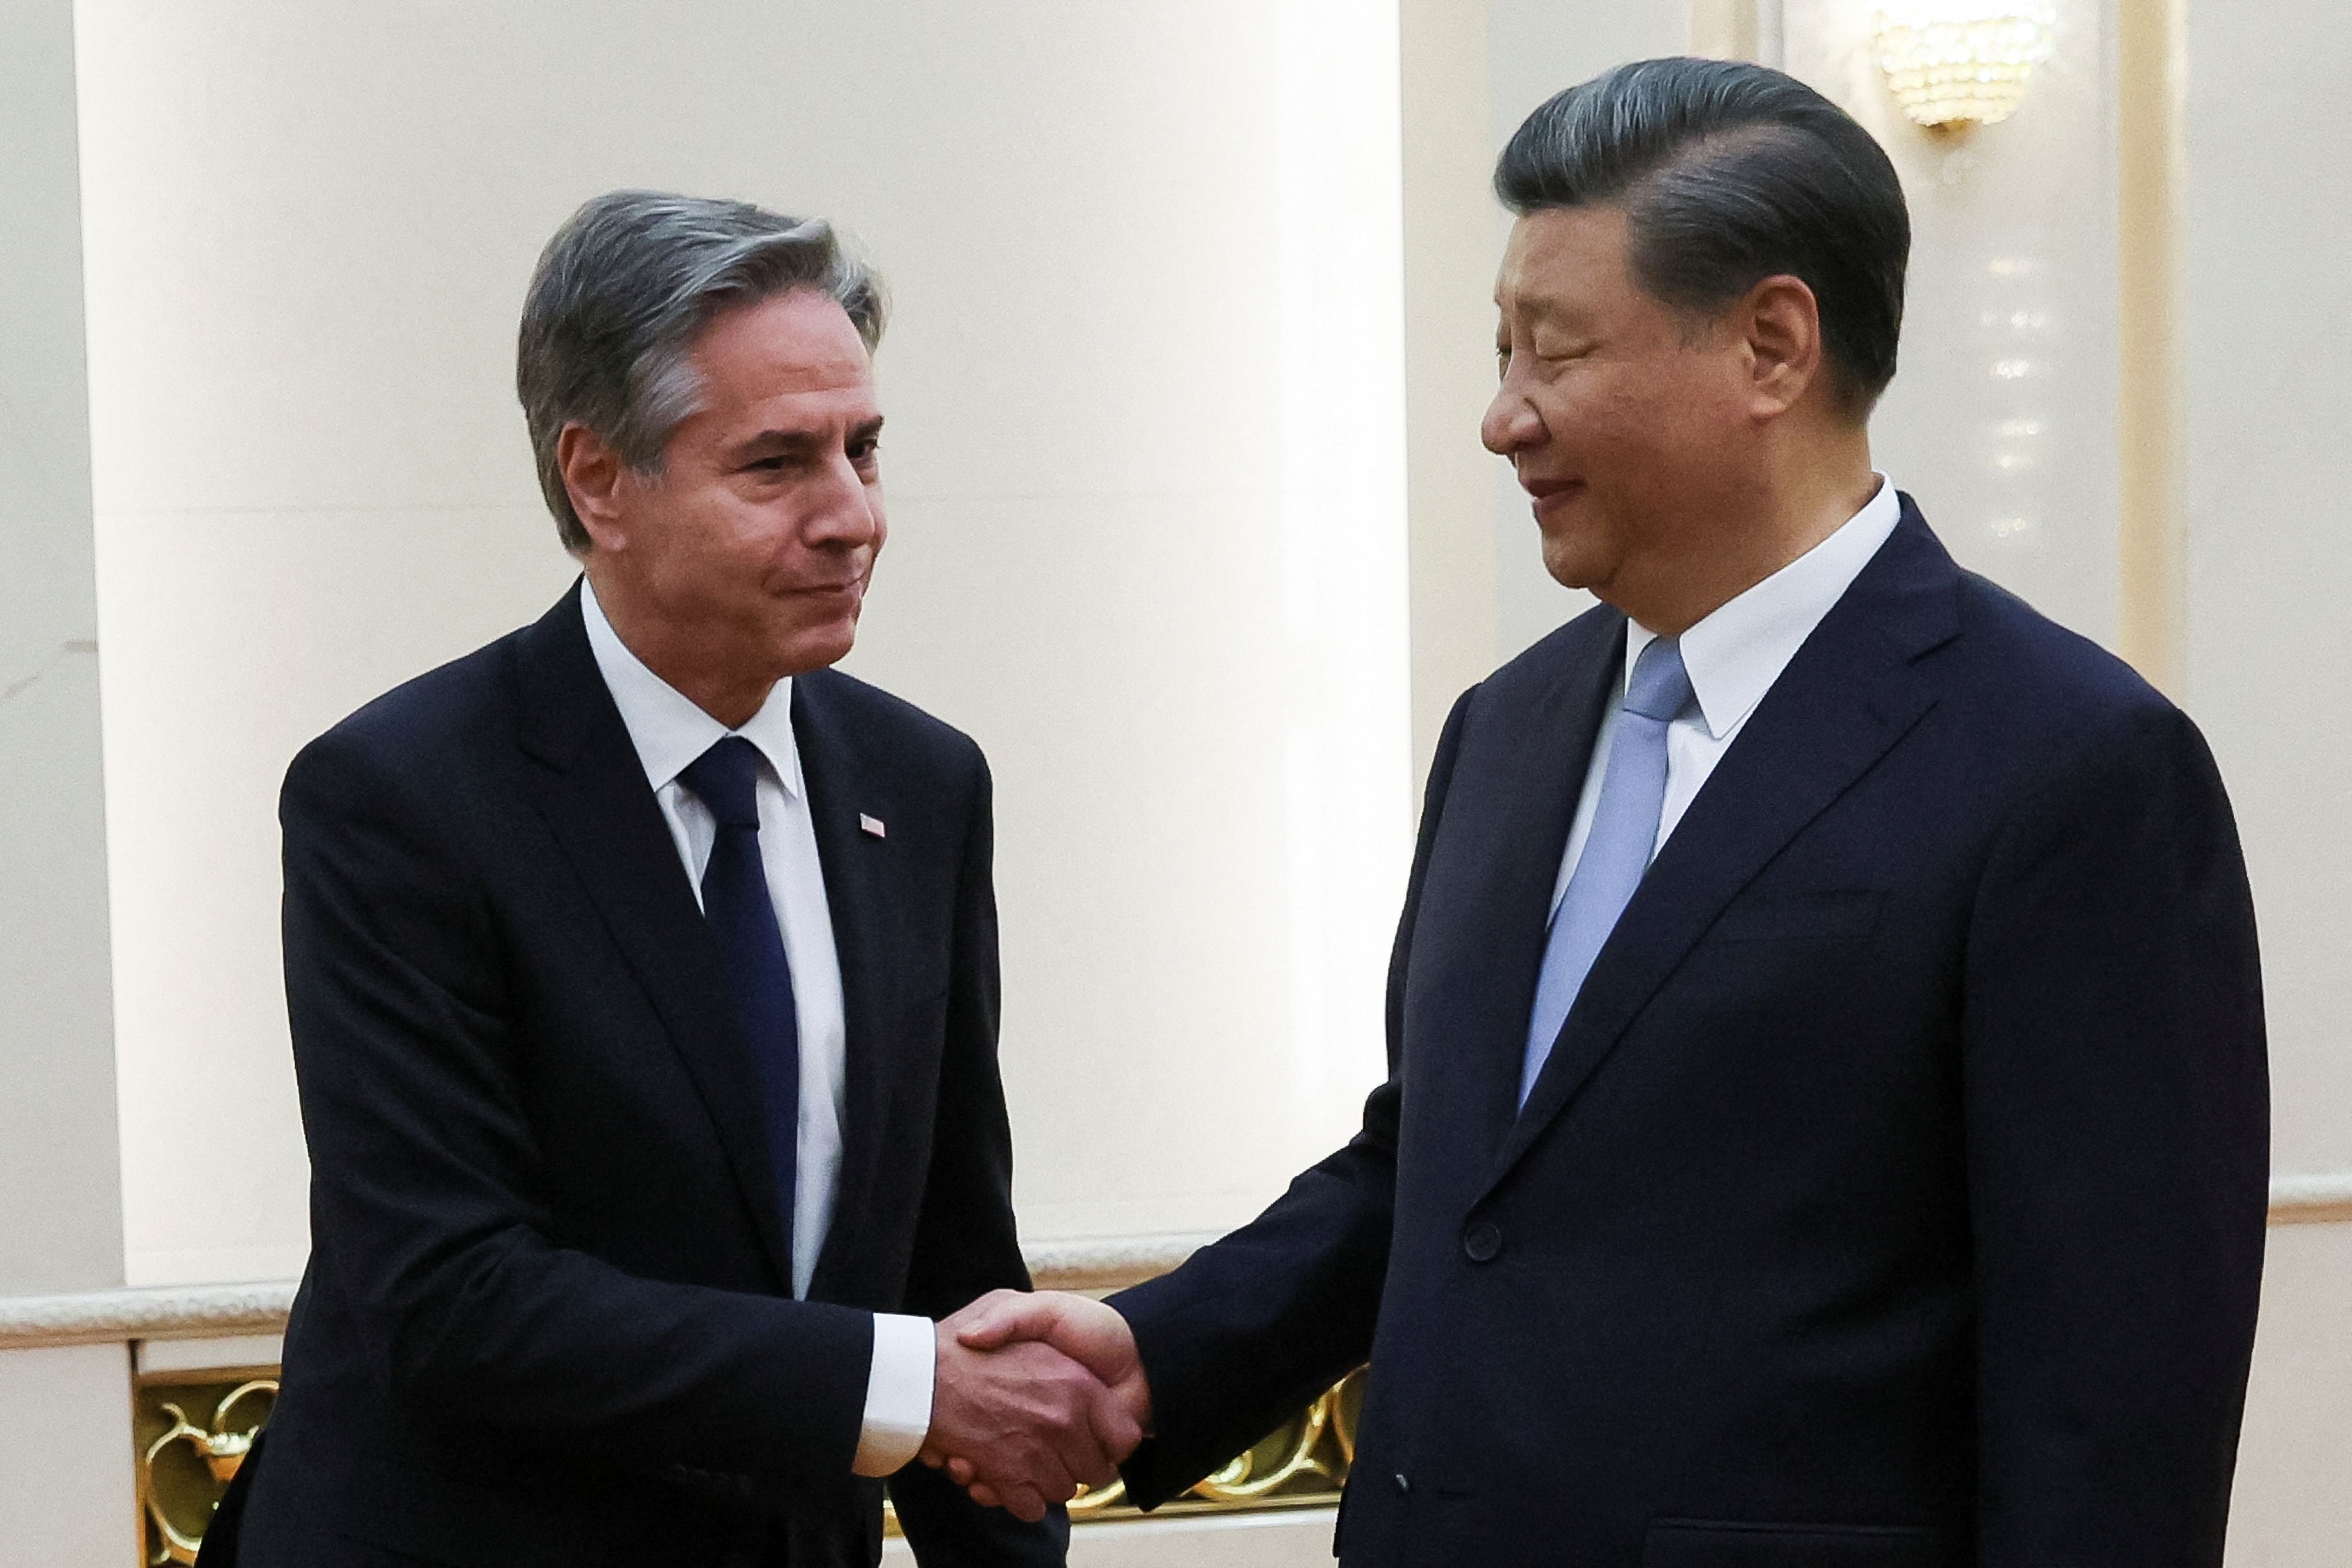 El Secretario de Estado estadounidense Antony Blinken estrecha la mano del Presidente chino Xi Jinping en el Gran Salón del Pueblo (REUTERS/Leah Millis/Pool)